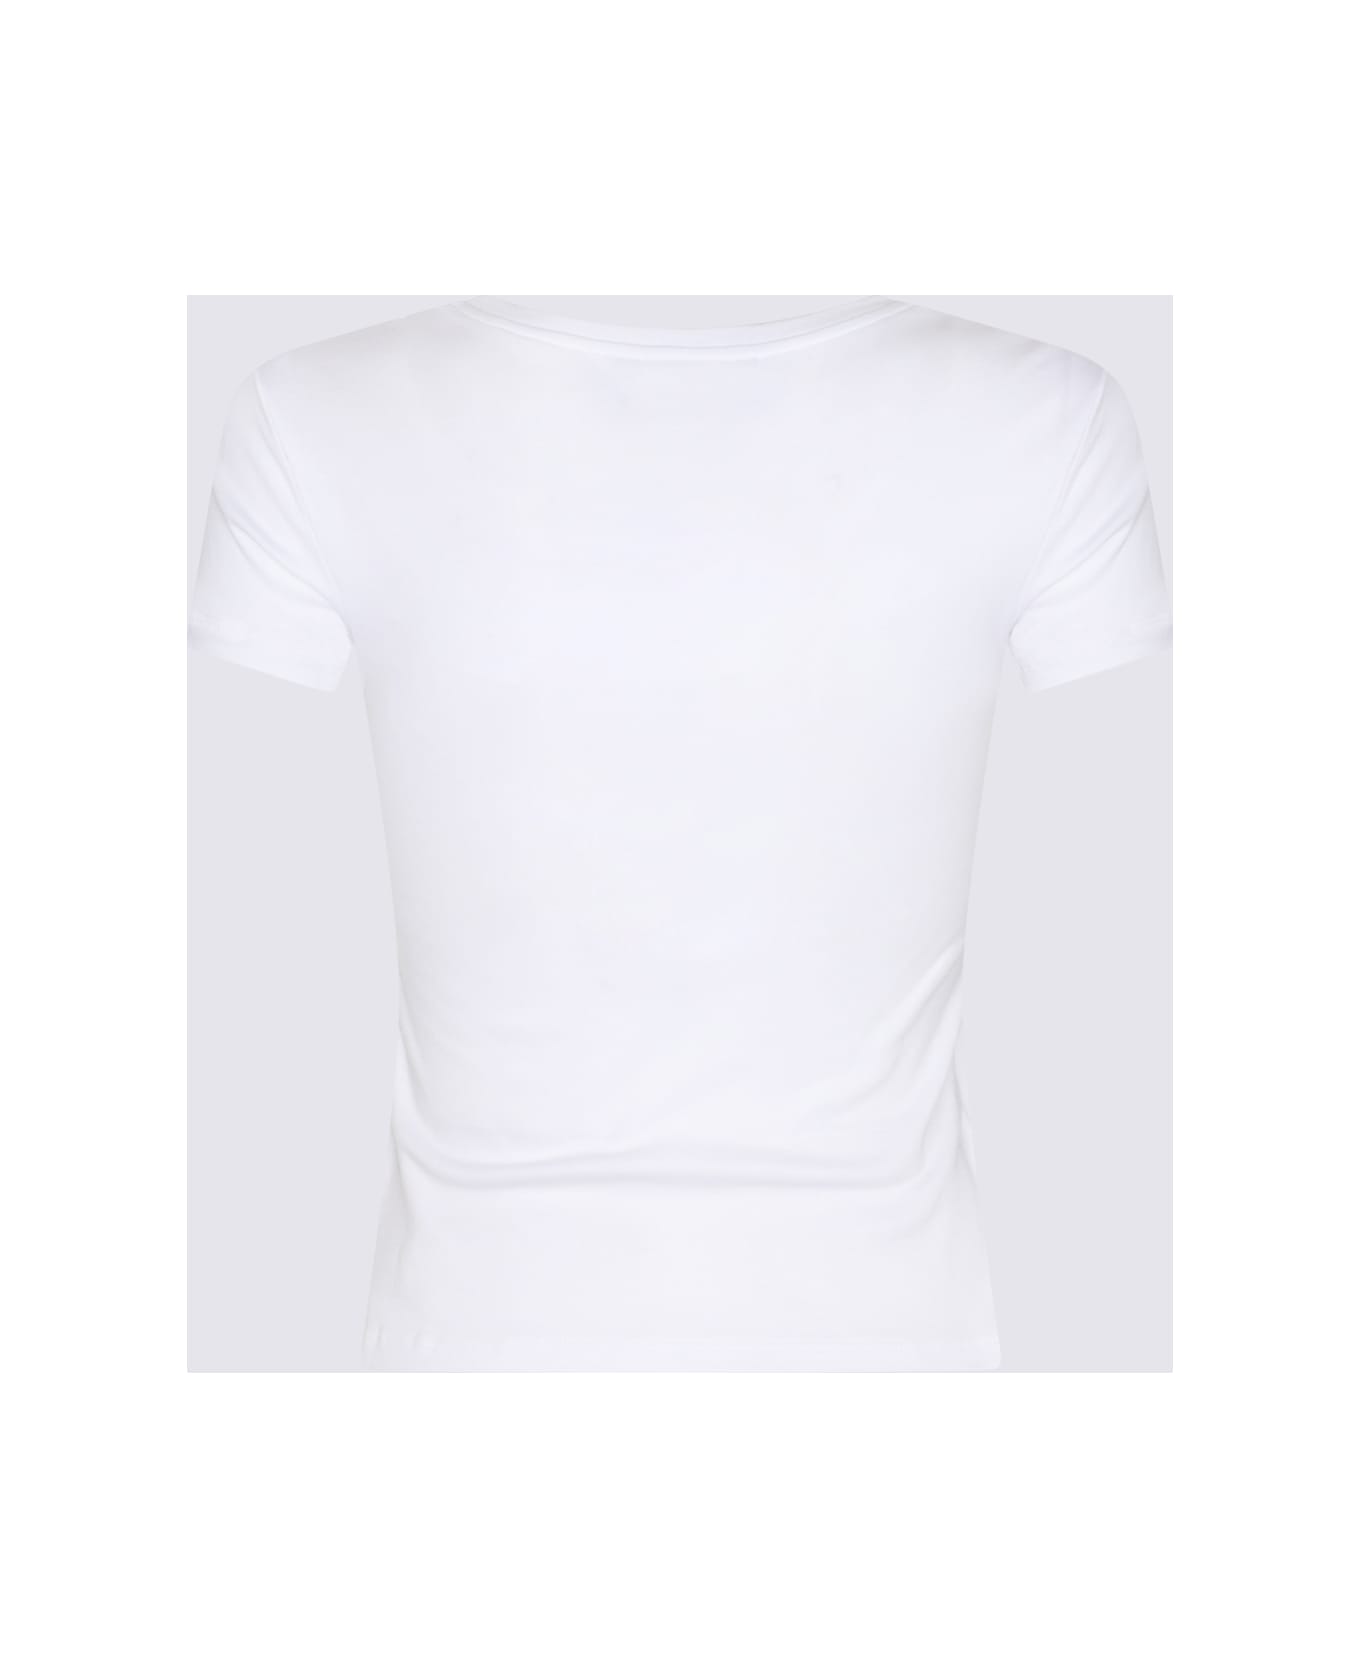 Blumarine White Cotton T-shirt - White Tシャツ